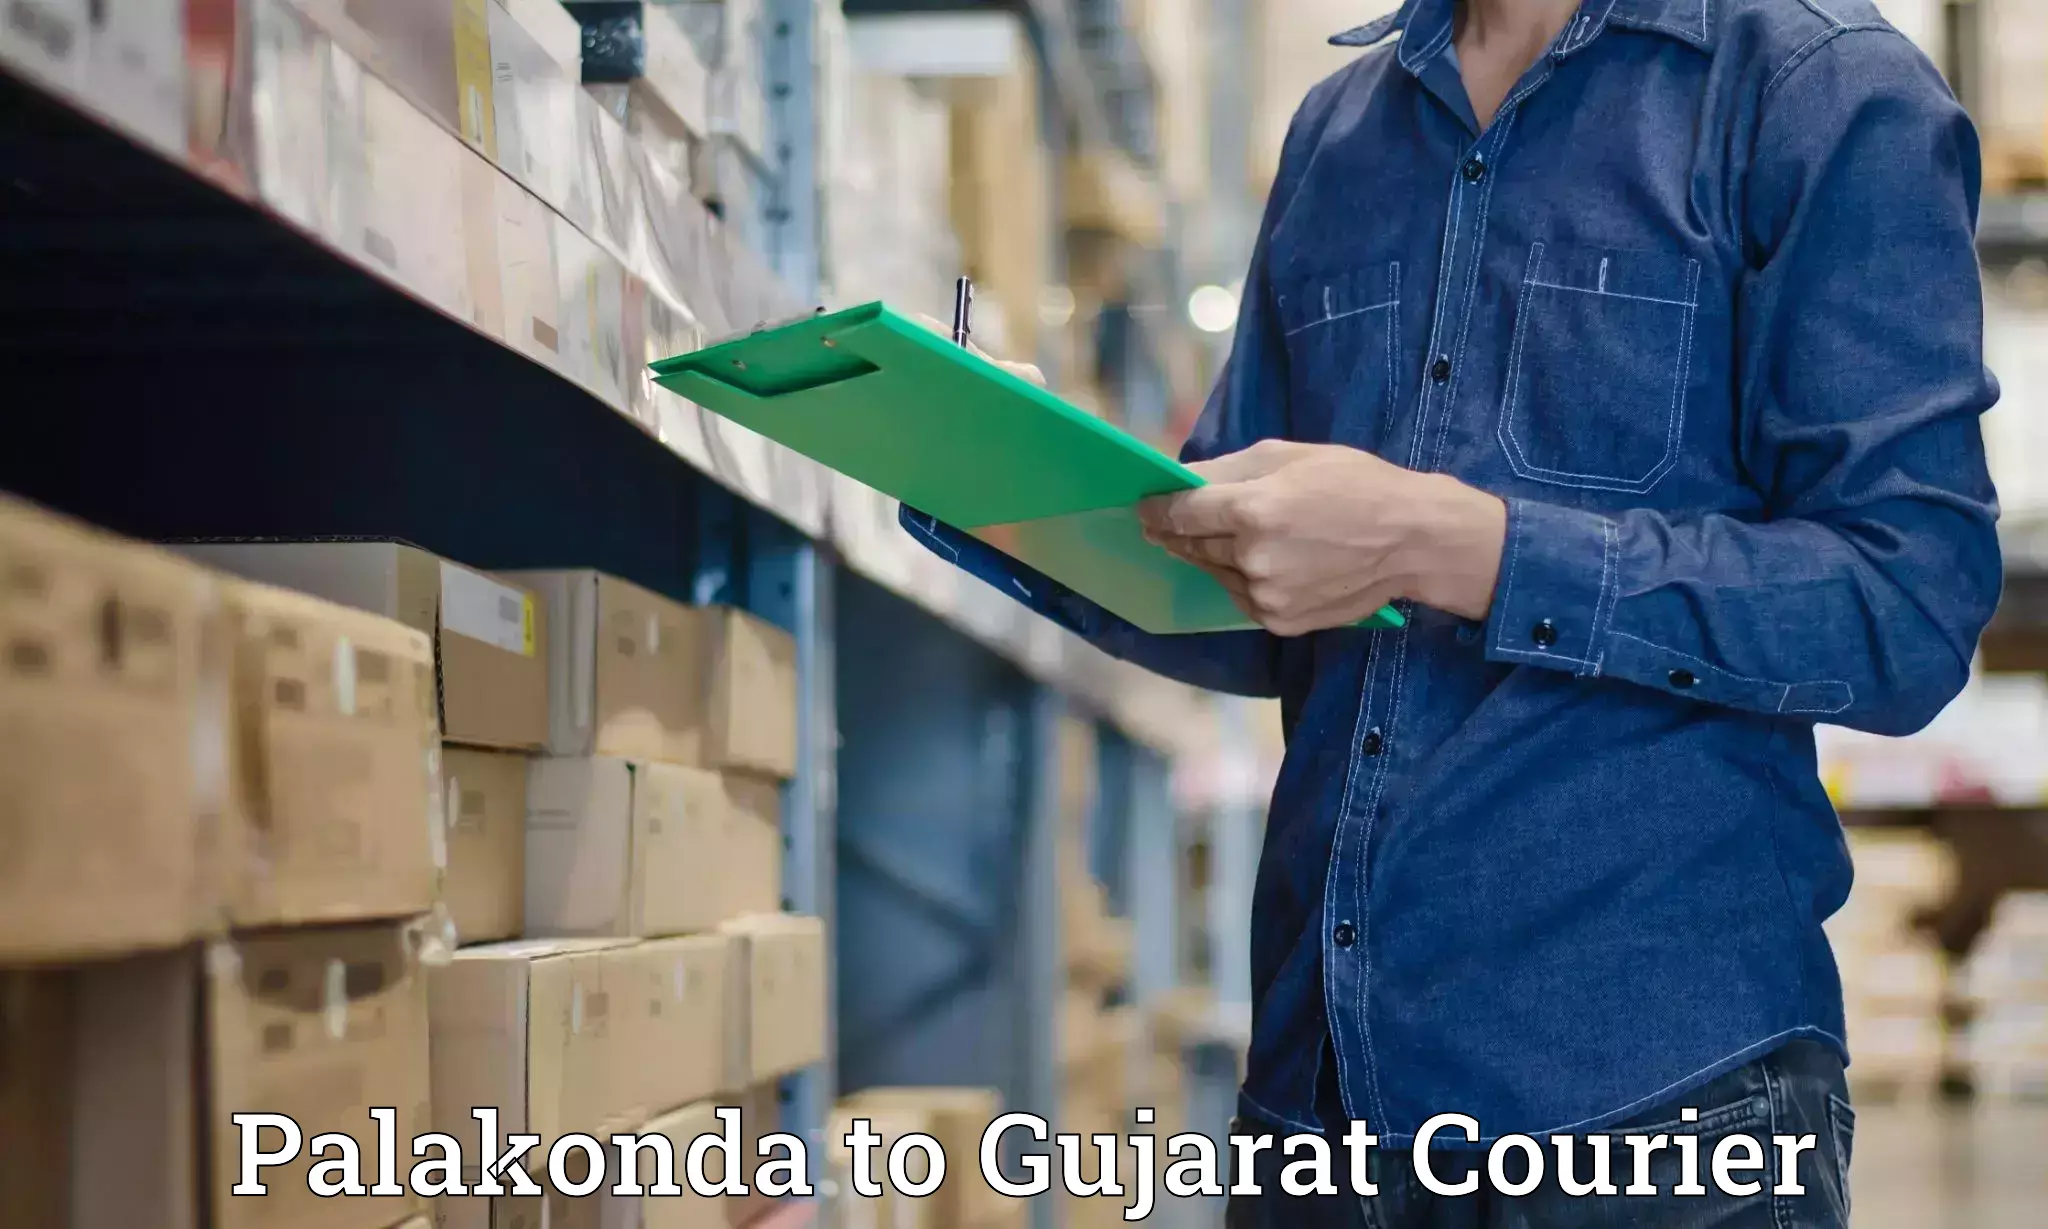 Advanced shipping logistics Palakonda to Anand